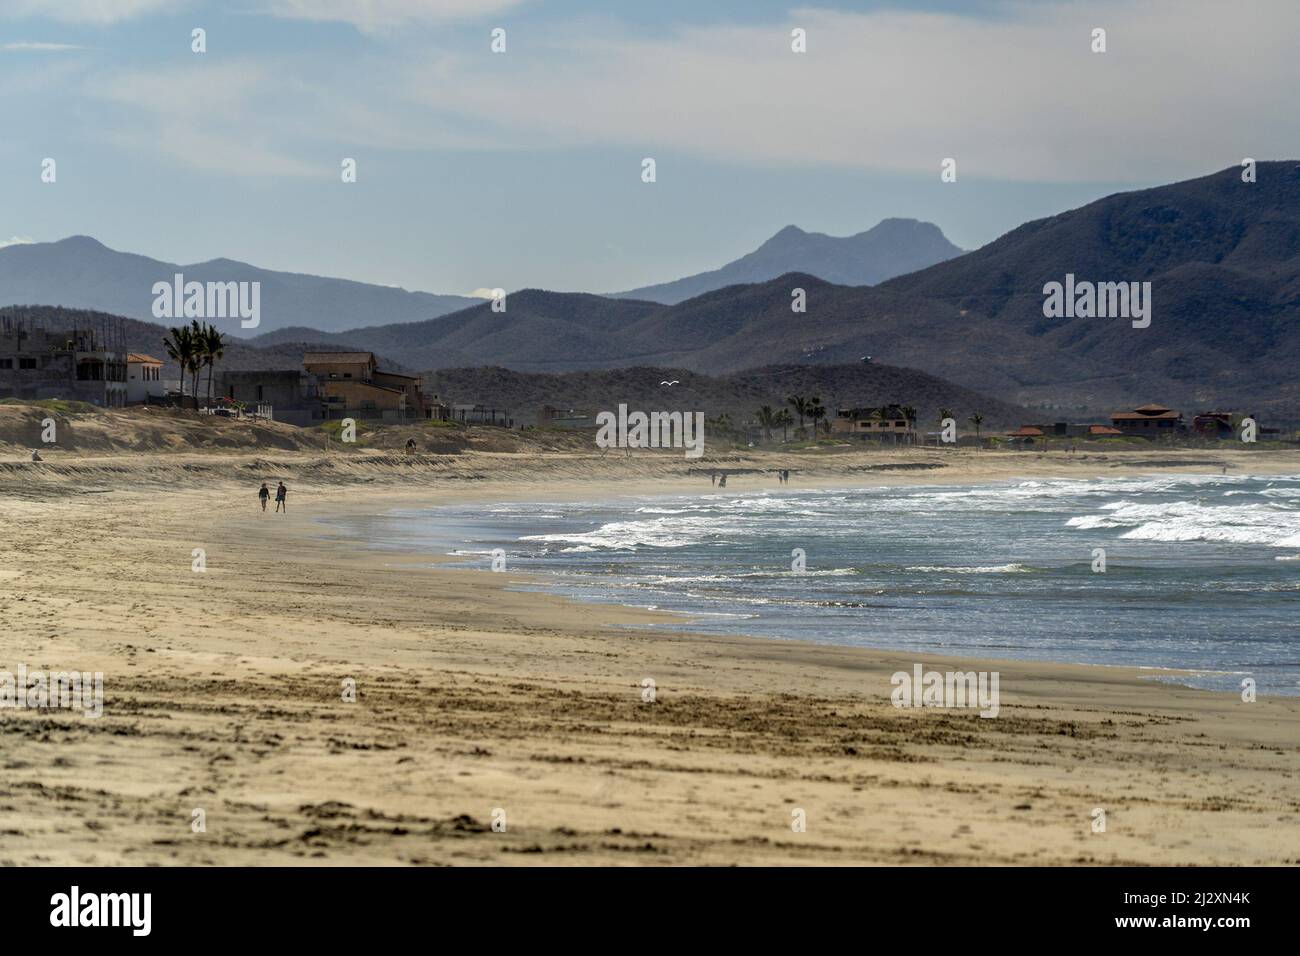 Cerritos todos santos baja california sur Beach mexique Banque D'Images